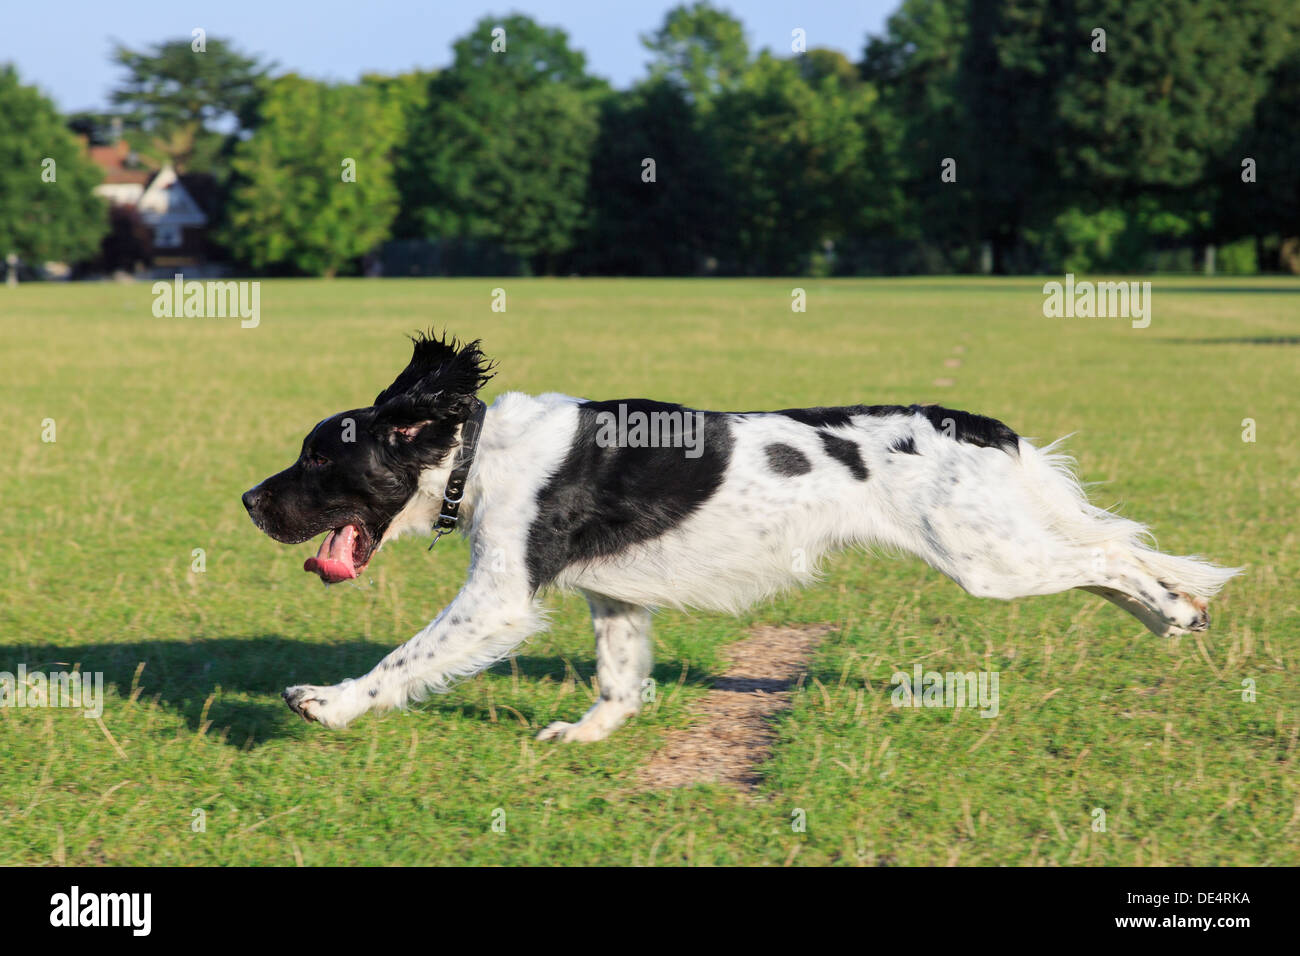 Un noir et blanc de race English Springer Spaniel chien courir vite à la poursuite d'un ballon à l'extérieur seul dans un parc. En Angleterre, Royaume-Uni, Angleterre Banque D'Images